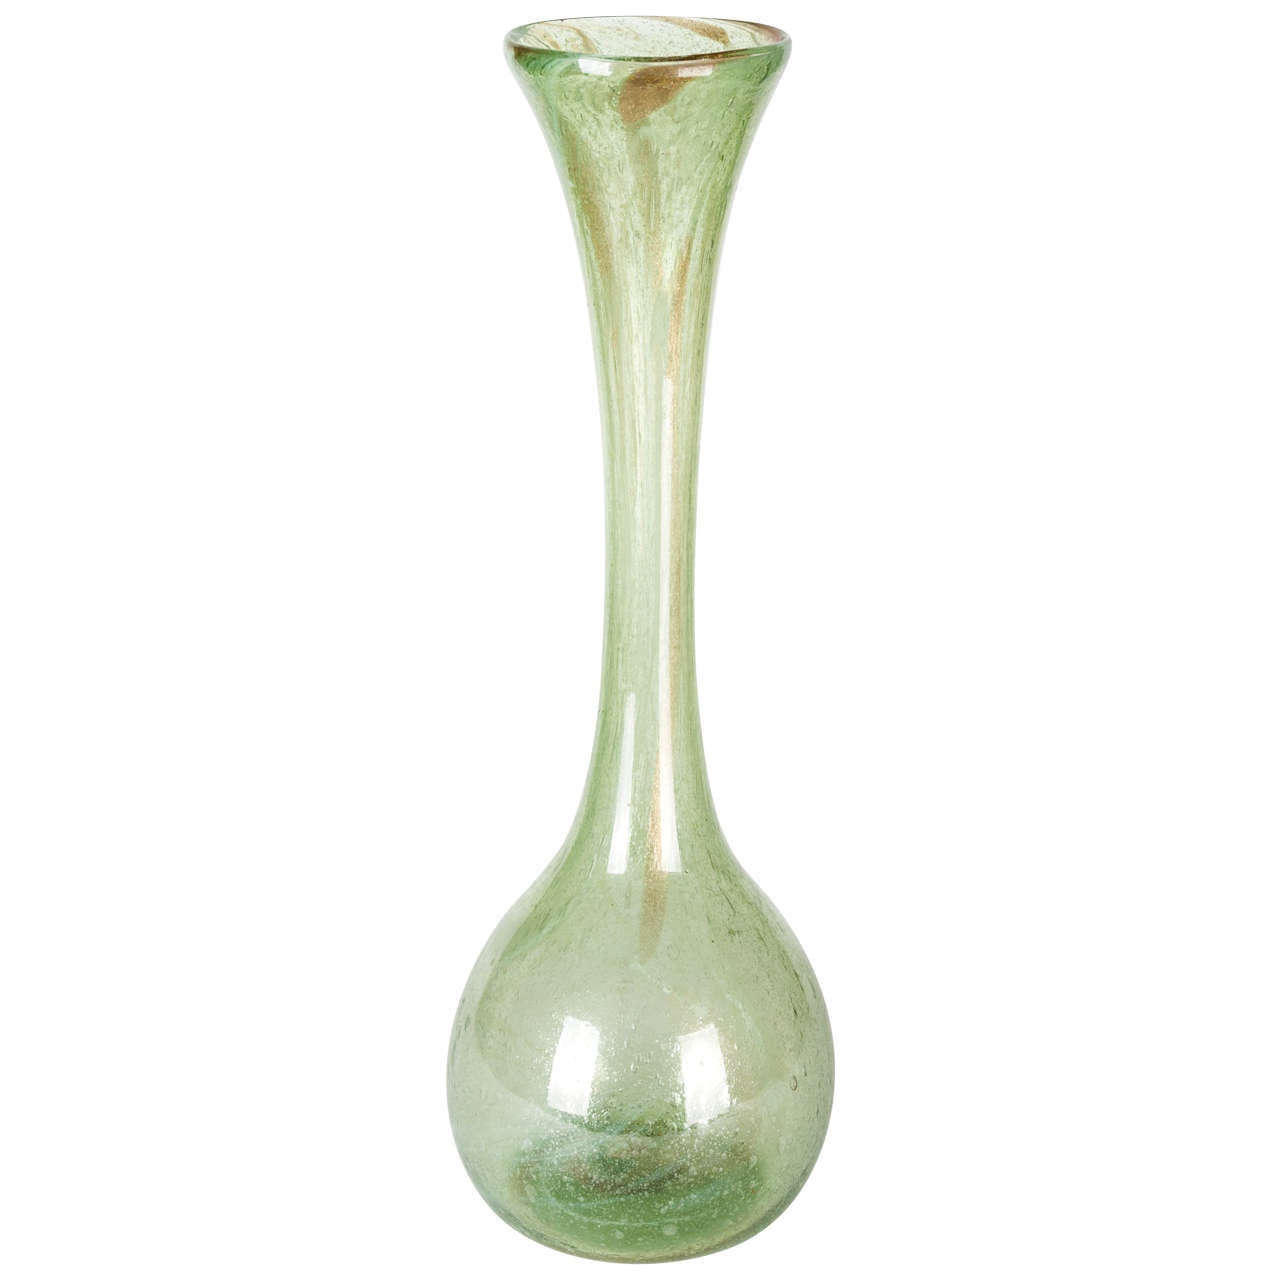 Huge Clutha Glass Vase Designed By Christopher Dresser for James Coupar & Sons For Sale